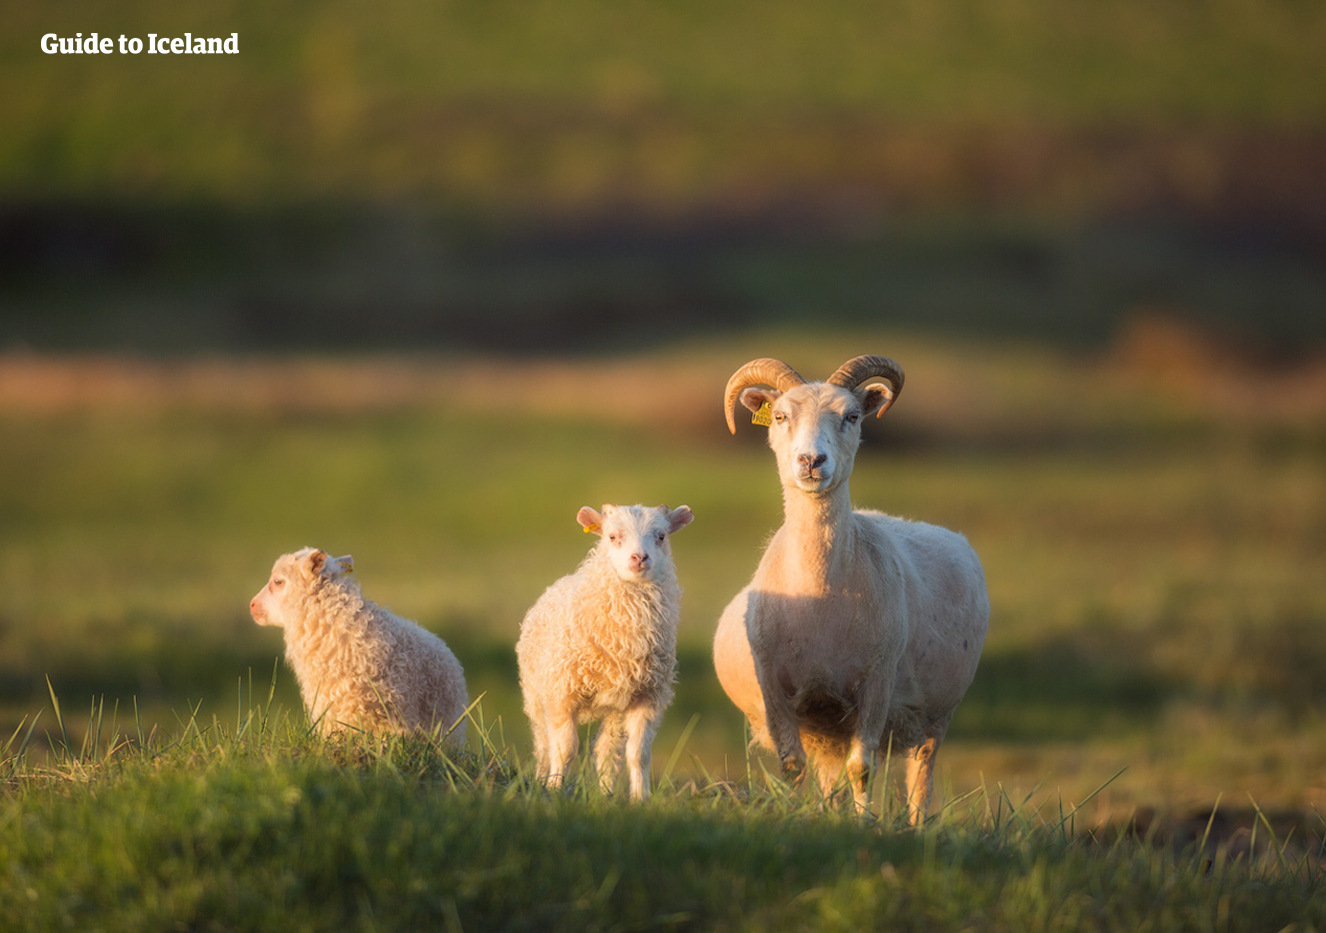 Ouvrez l'oeil pour voir des moutons pendant que vous parcourez la nature islandaise lors de votre autotour été.